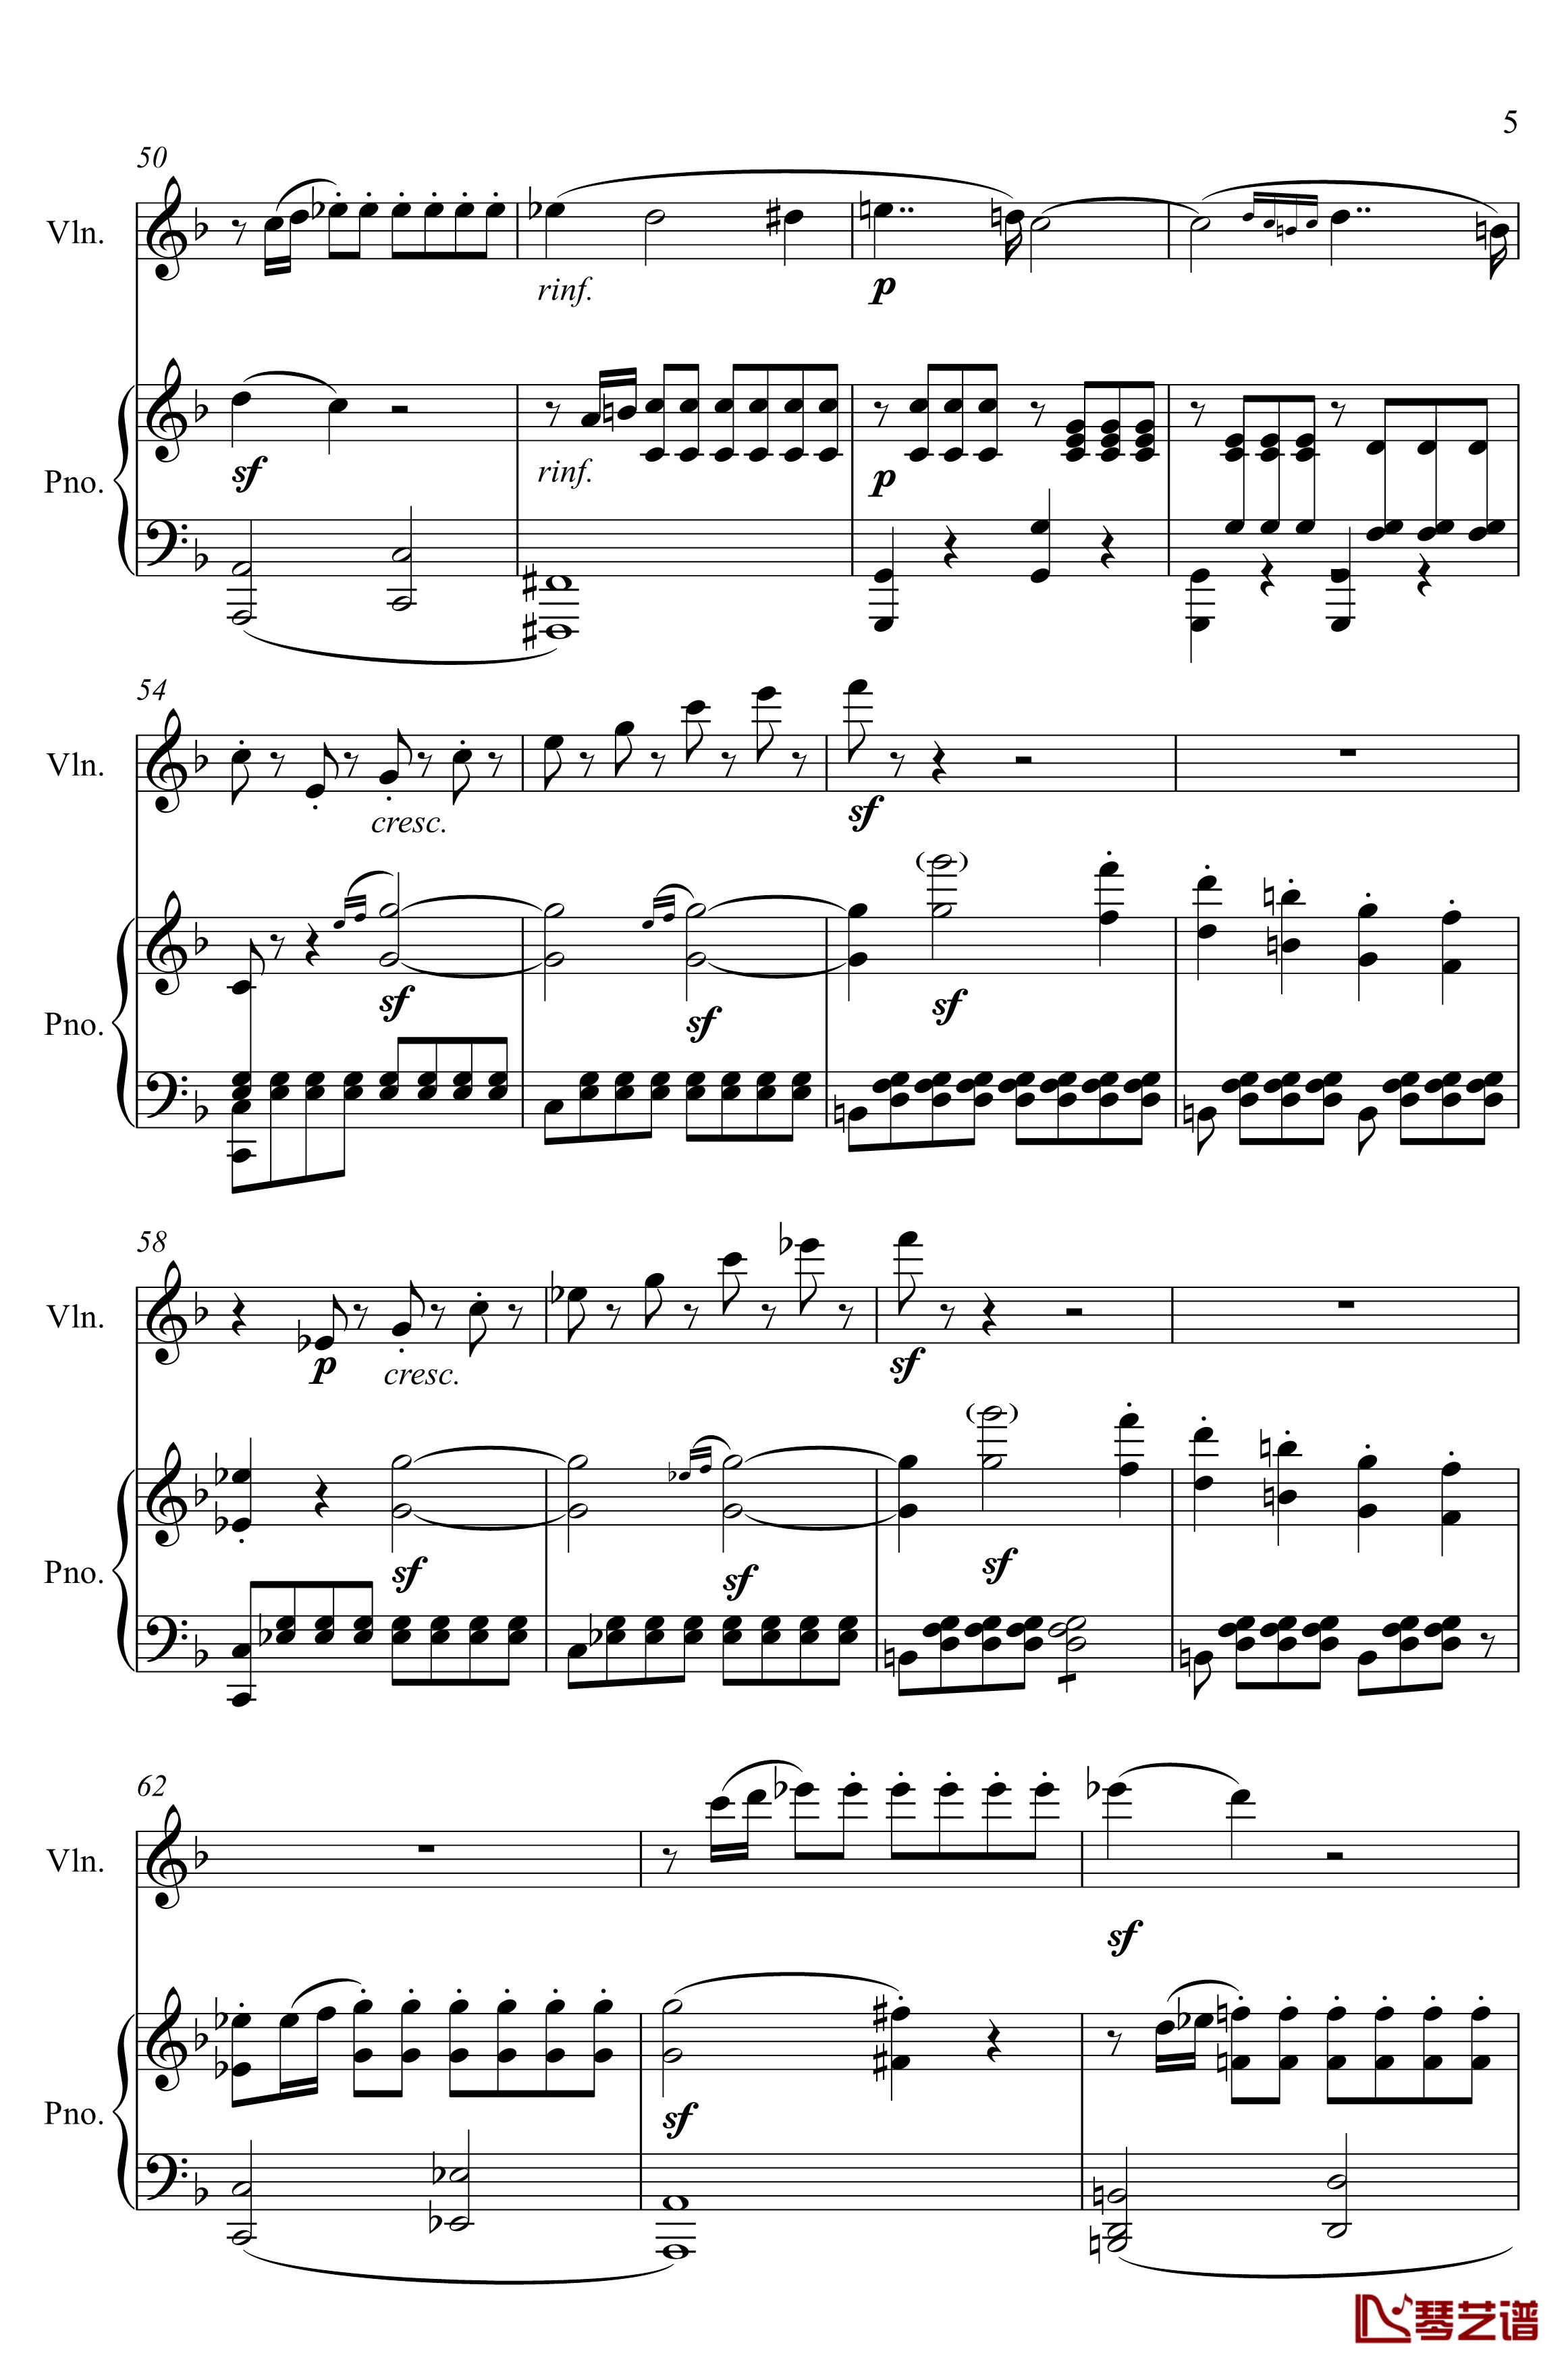 第5小提琴与钢琴奏鸣曲钢琴谱-第一乐章钢琴谱-贝多芬-beethoven5